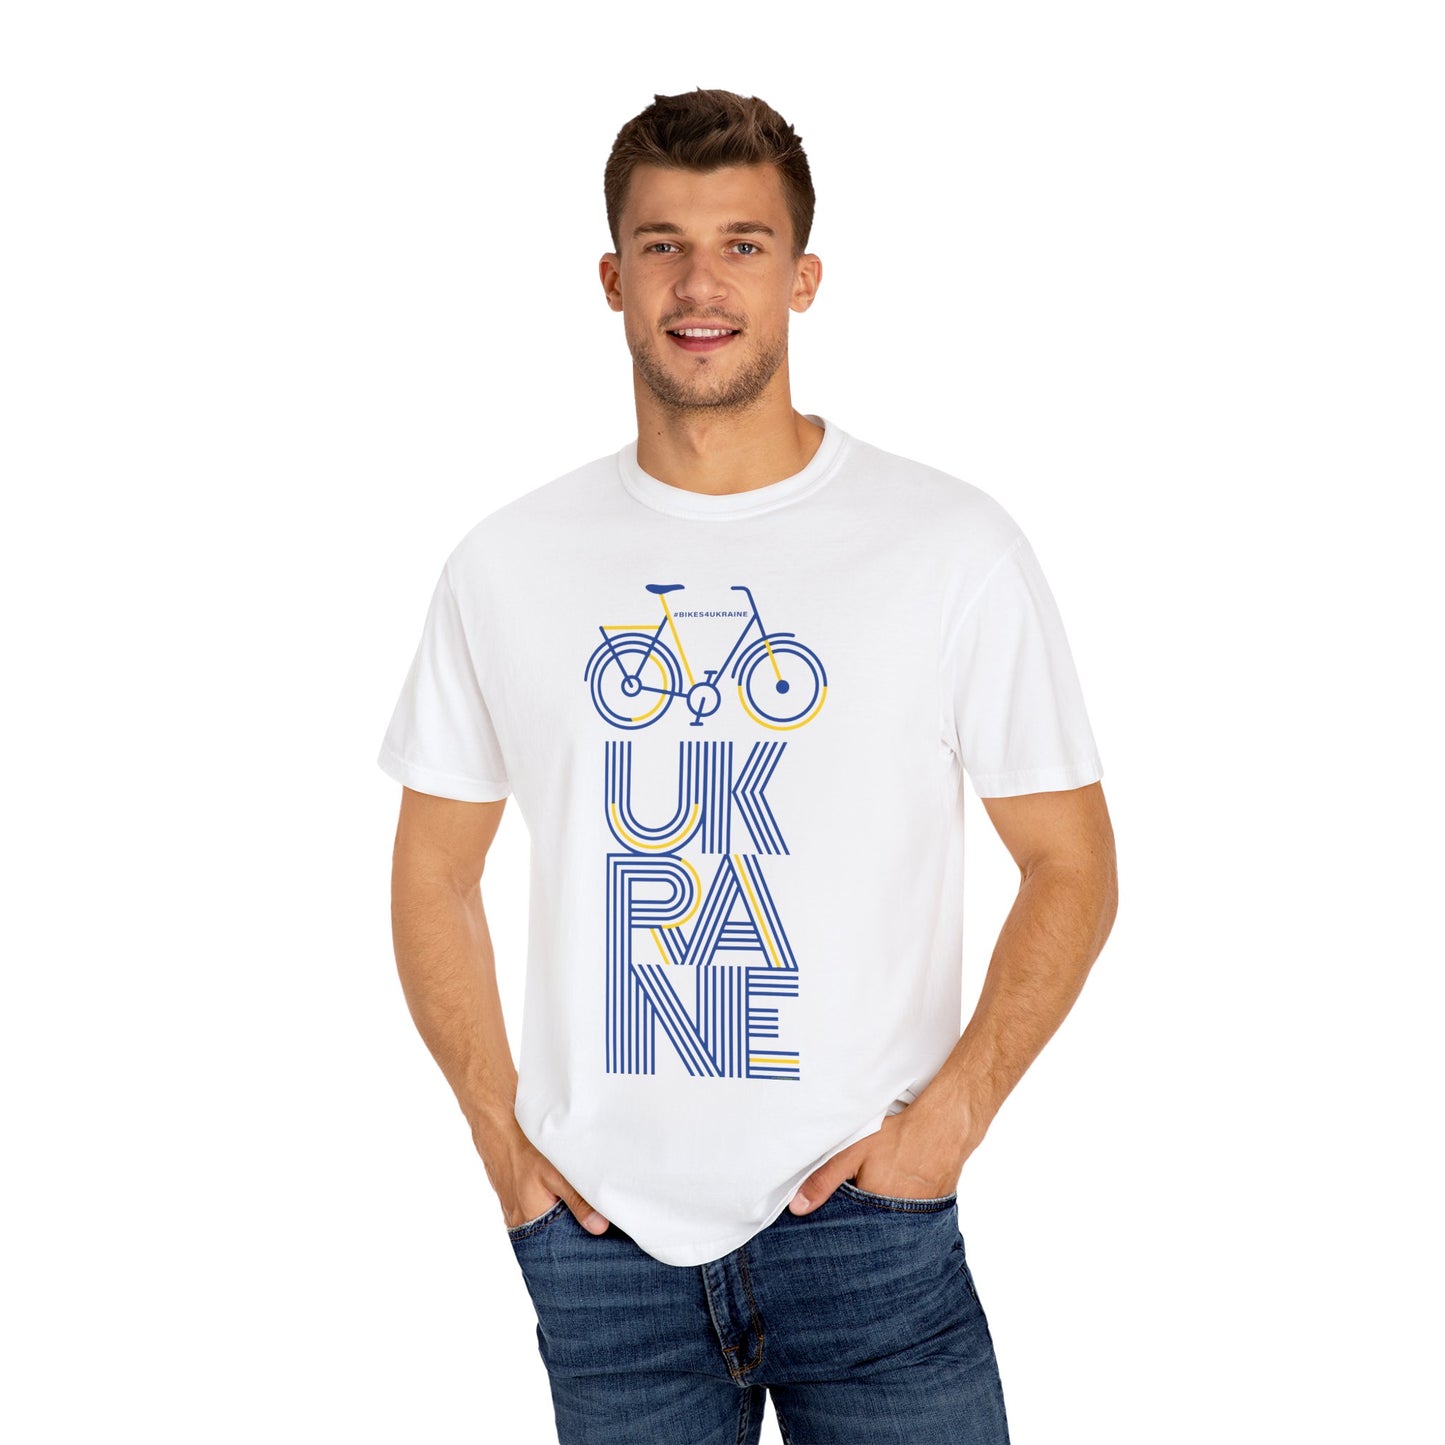 Bikes4Ukraine T-shirt - Design by Brian Branch